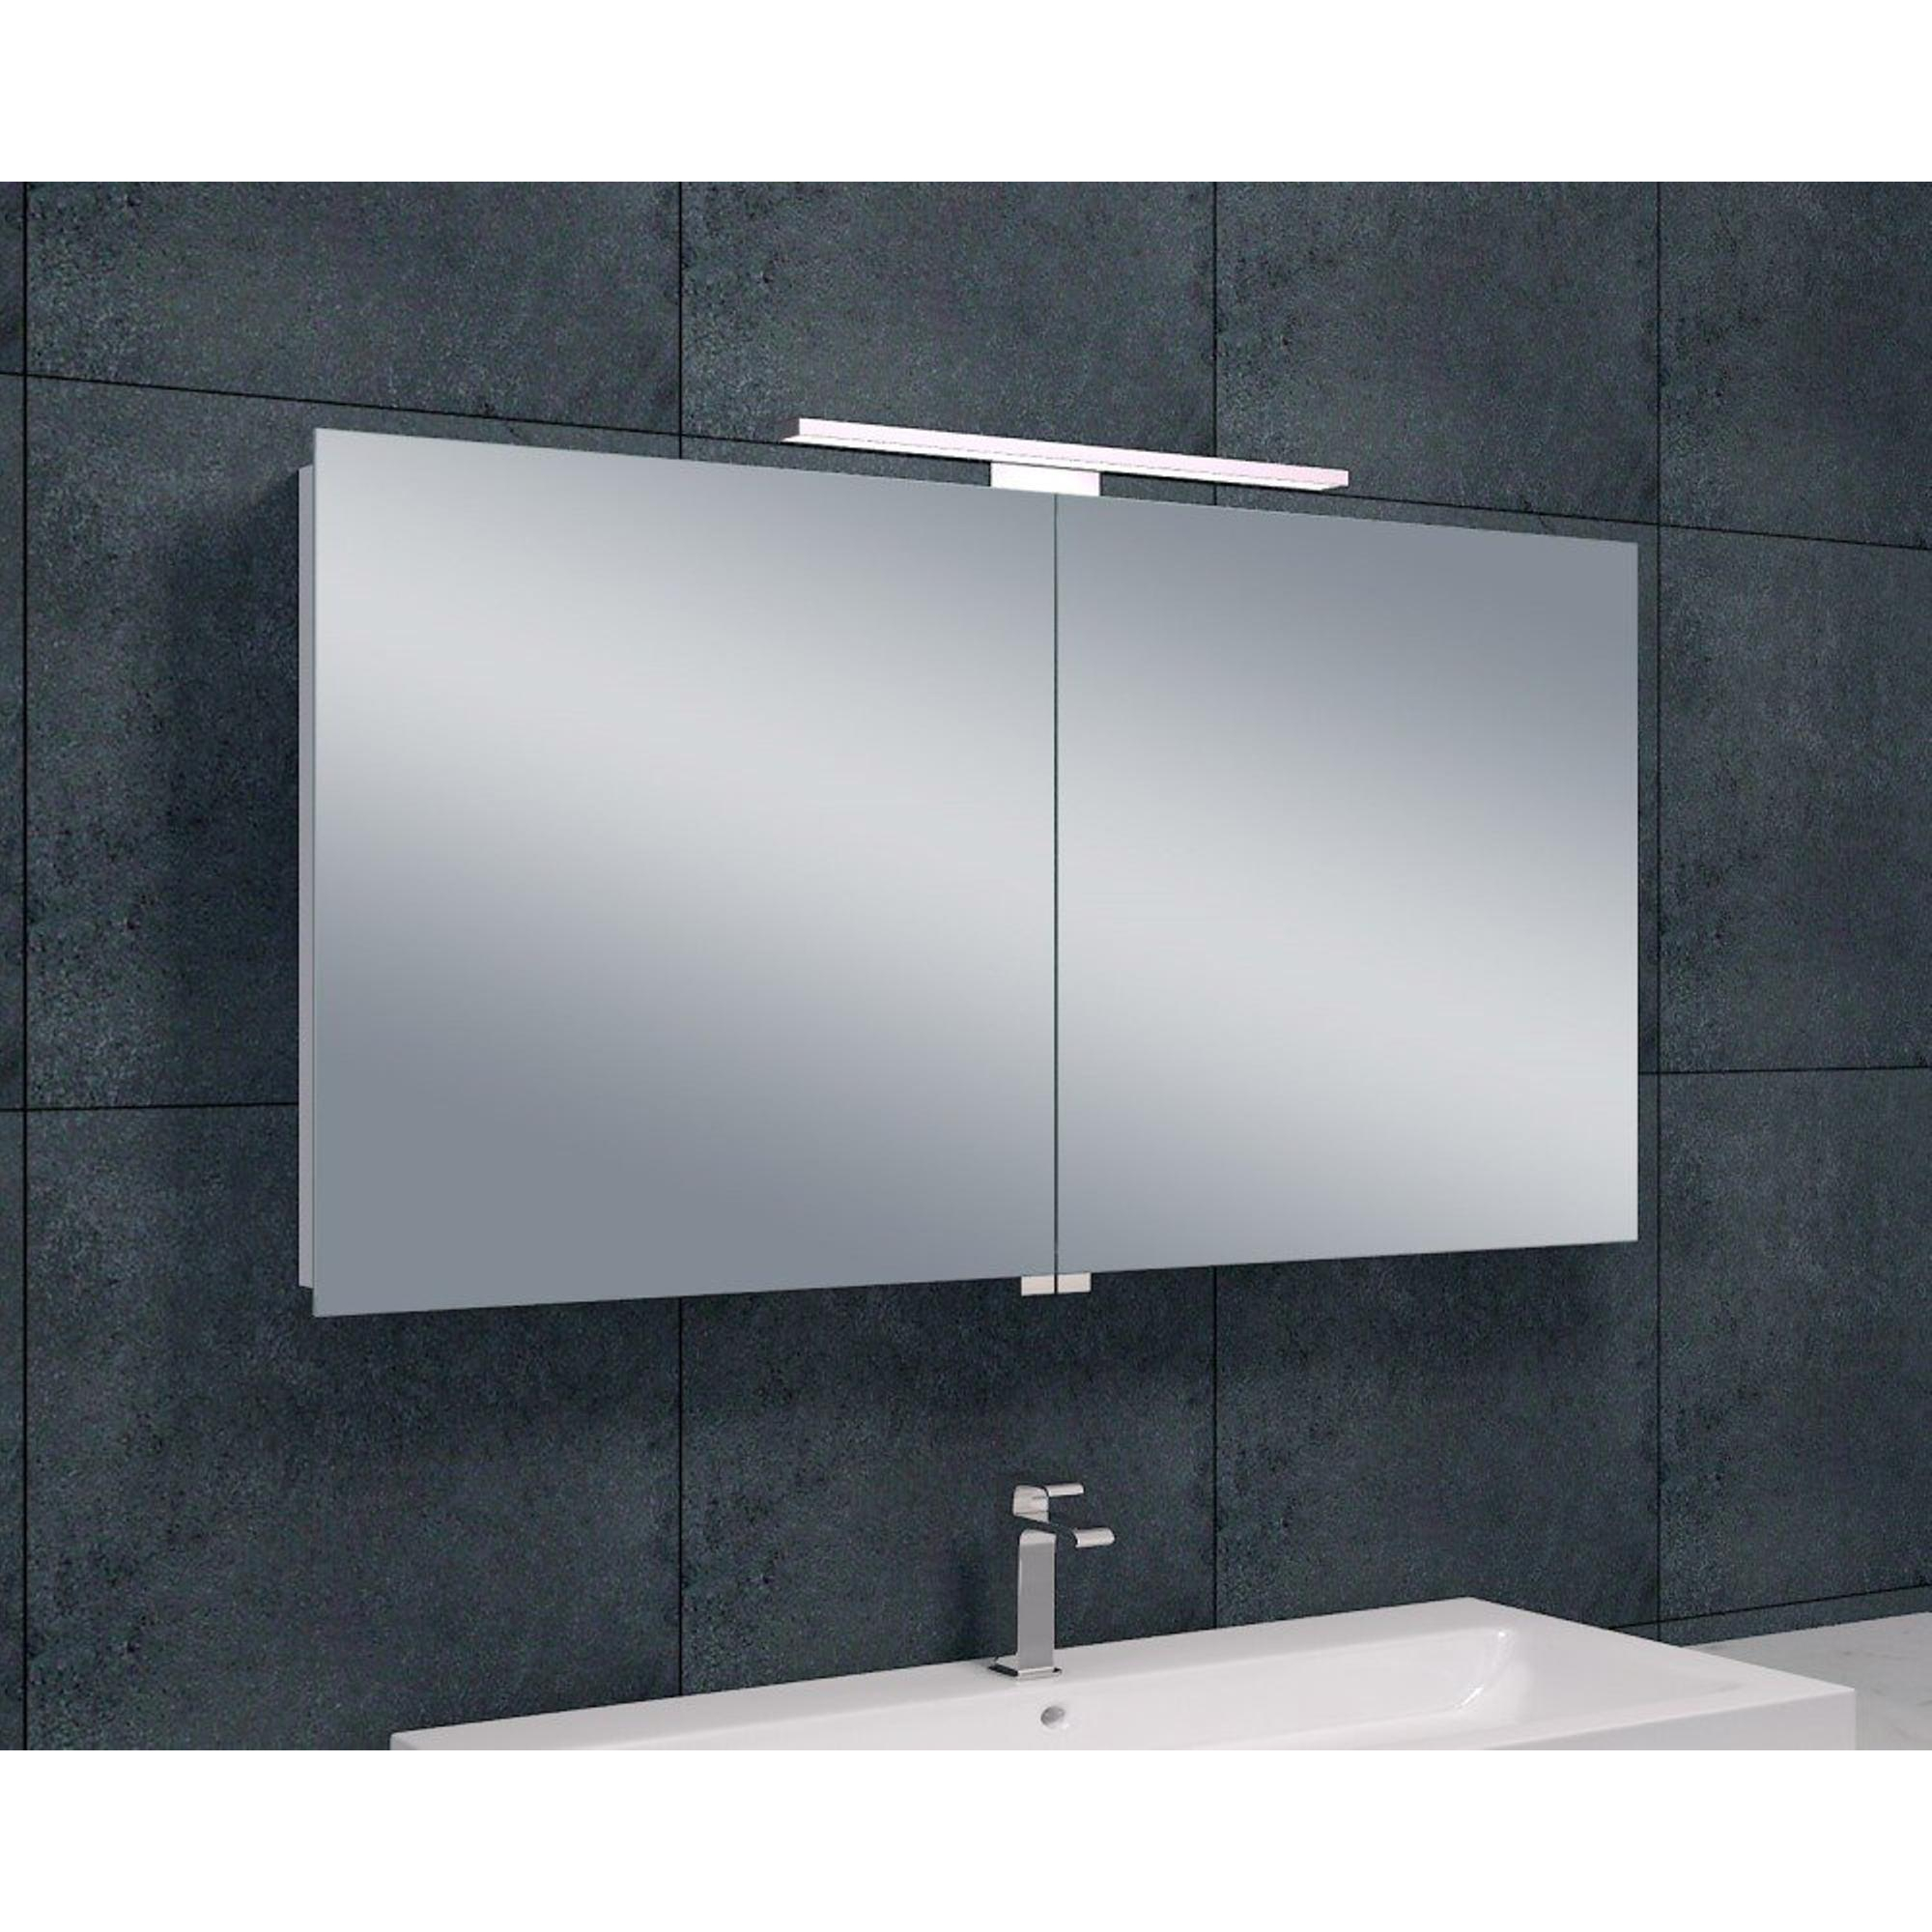 Miroirs de salle de bain - Comparez les prix pour professionnels